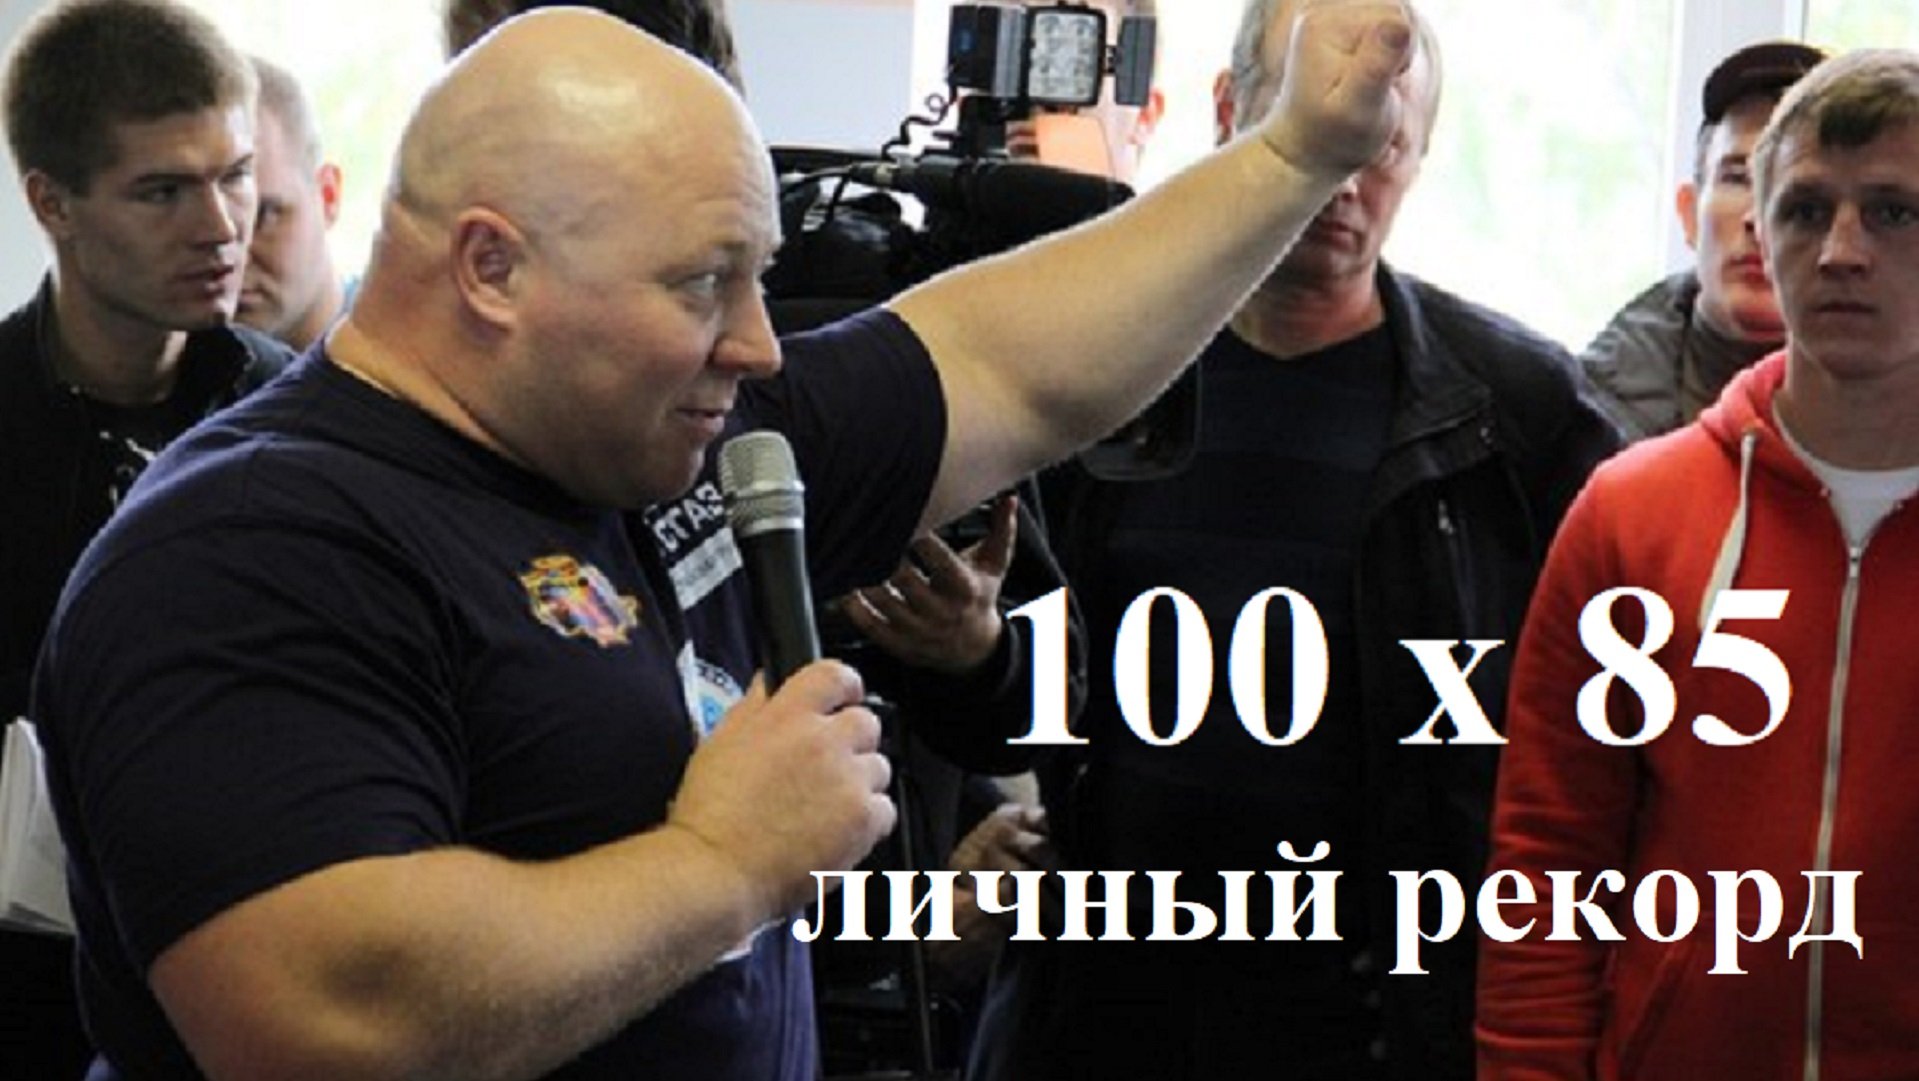 Андрей Гальцов. Классический Русский Жим 100 кг на 85 повторений.